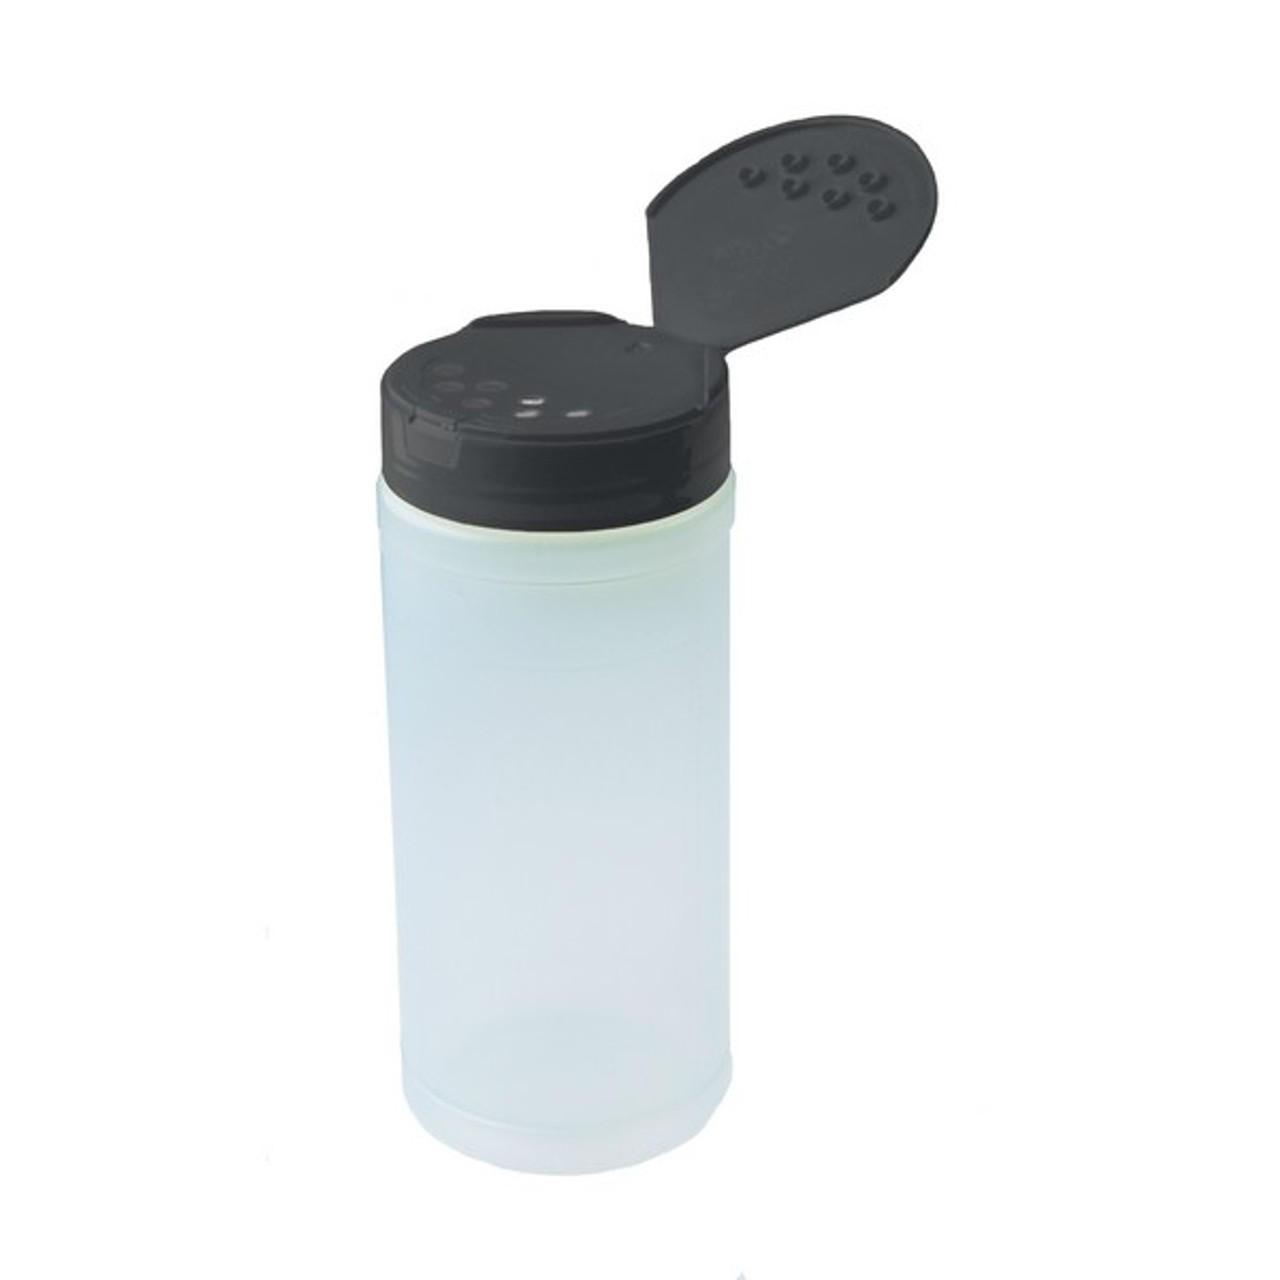 5.5 oz. Clear PET Plastic Spice Jar, 48mm 48-485